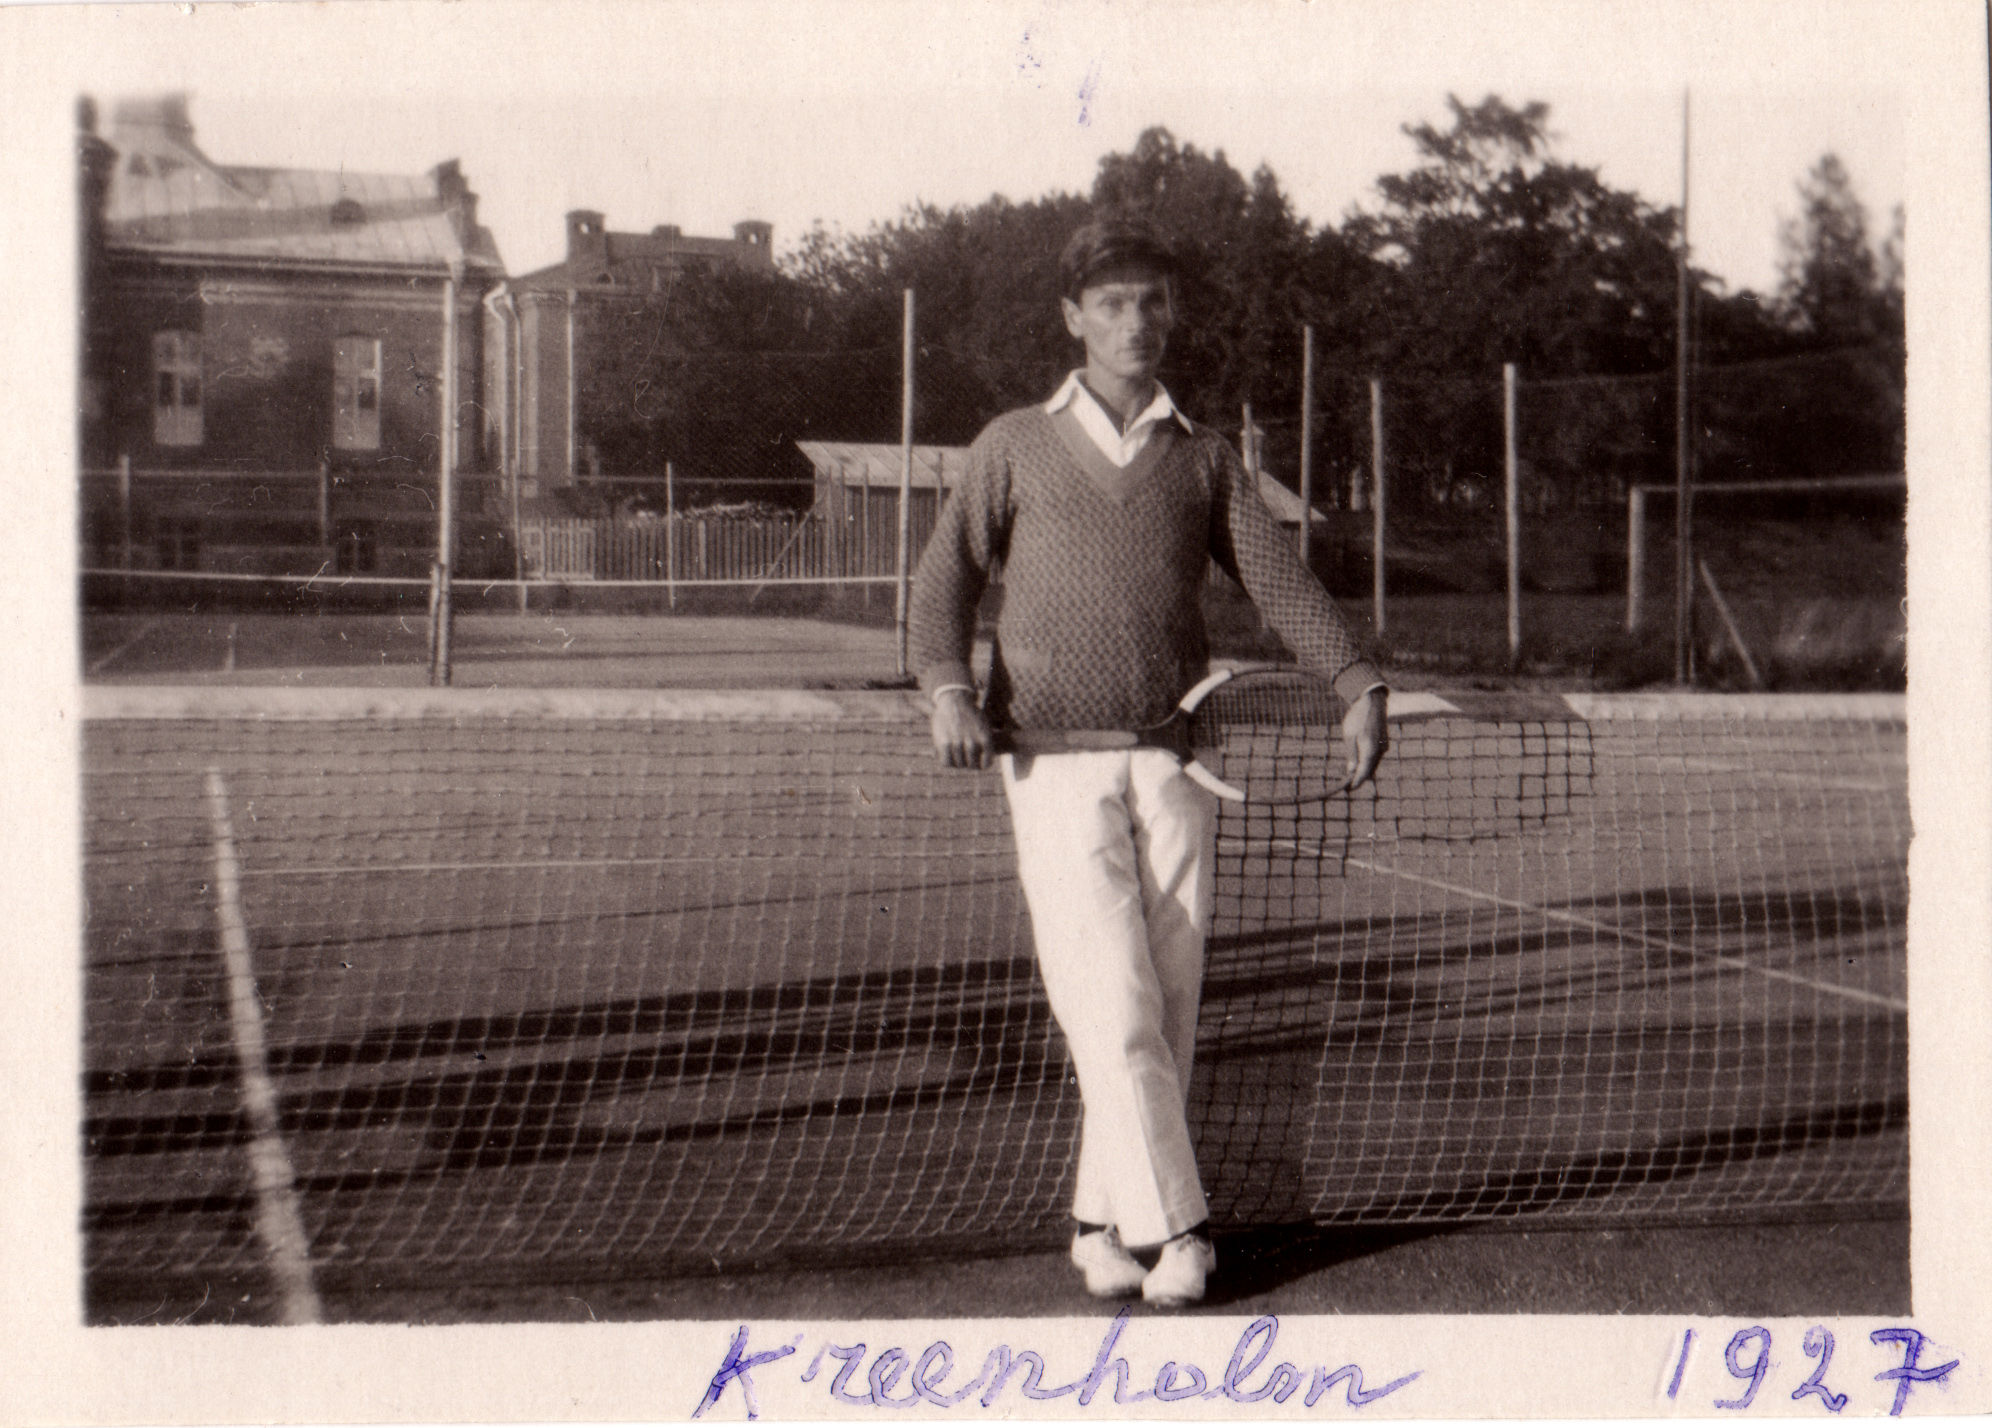 Tennisist Adolf Säkk